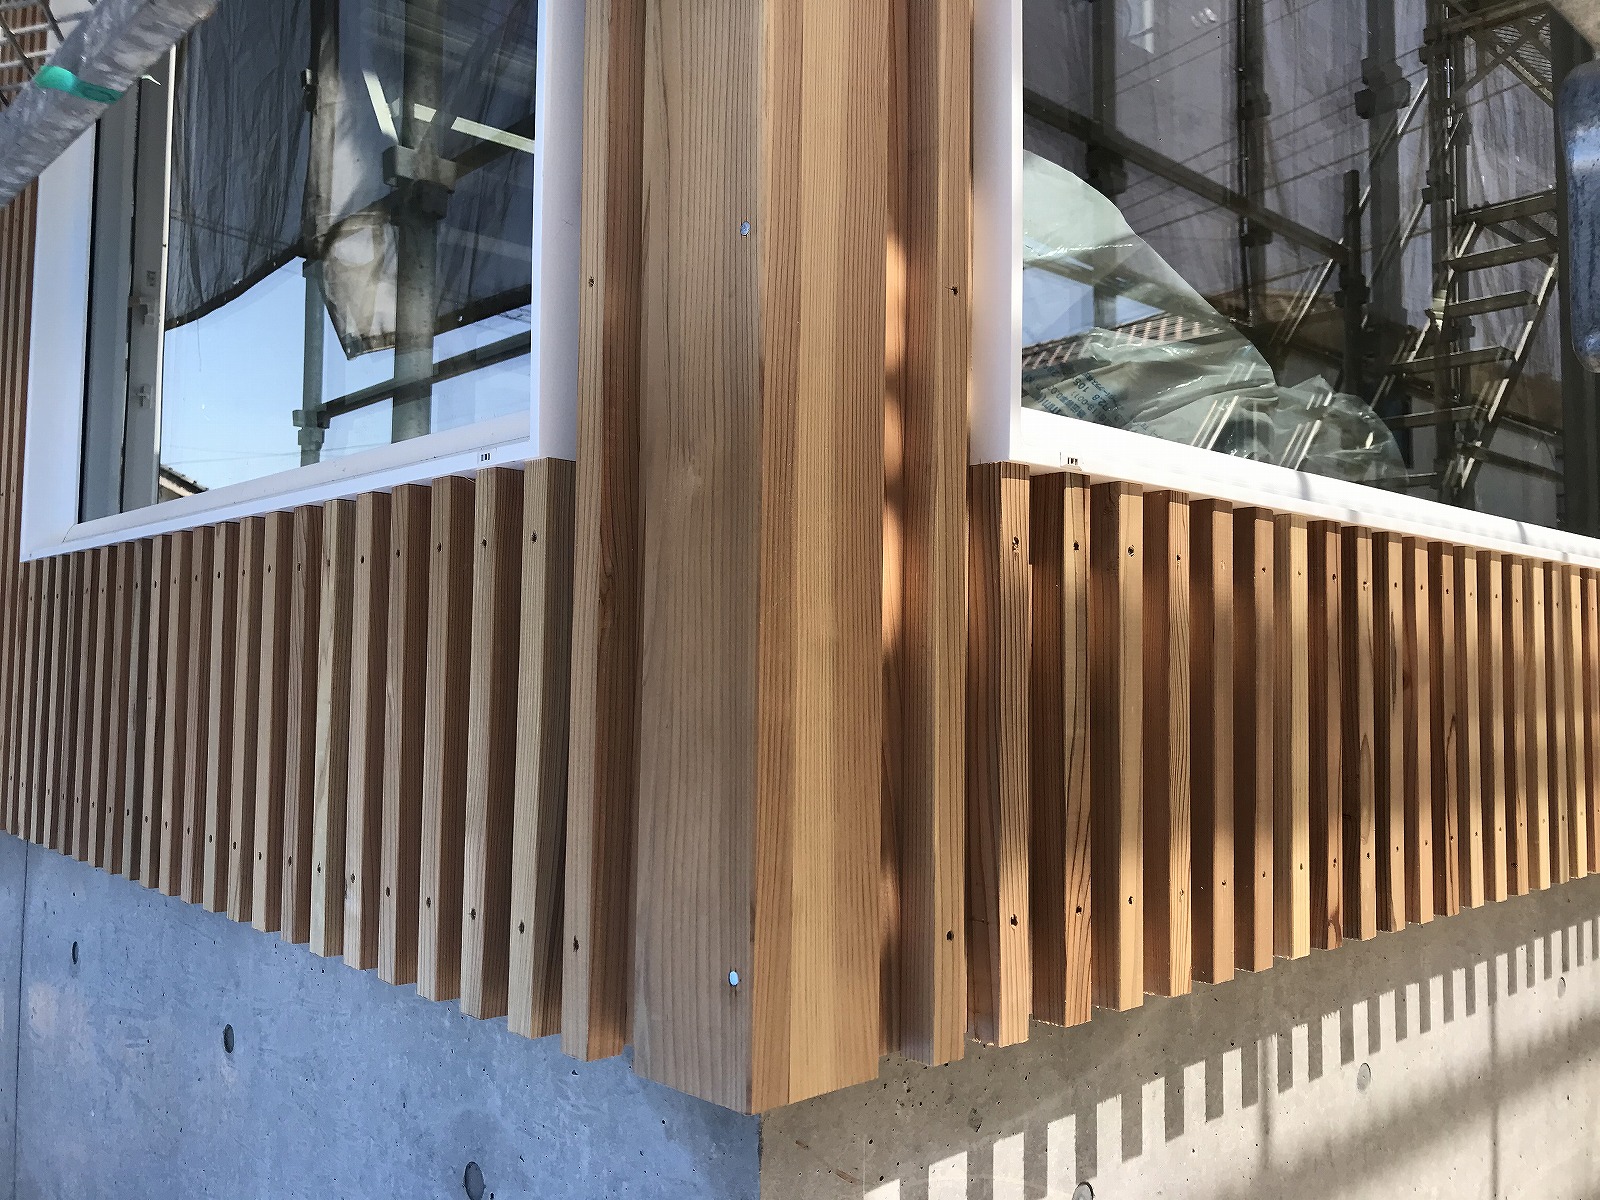 中野のエスネル 04 ｎ杉外壁 張り方のバリエーション ルーバー張り 住宅設計エスネルデザイン